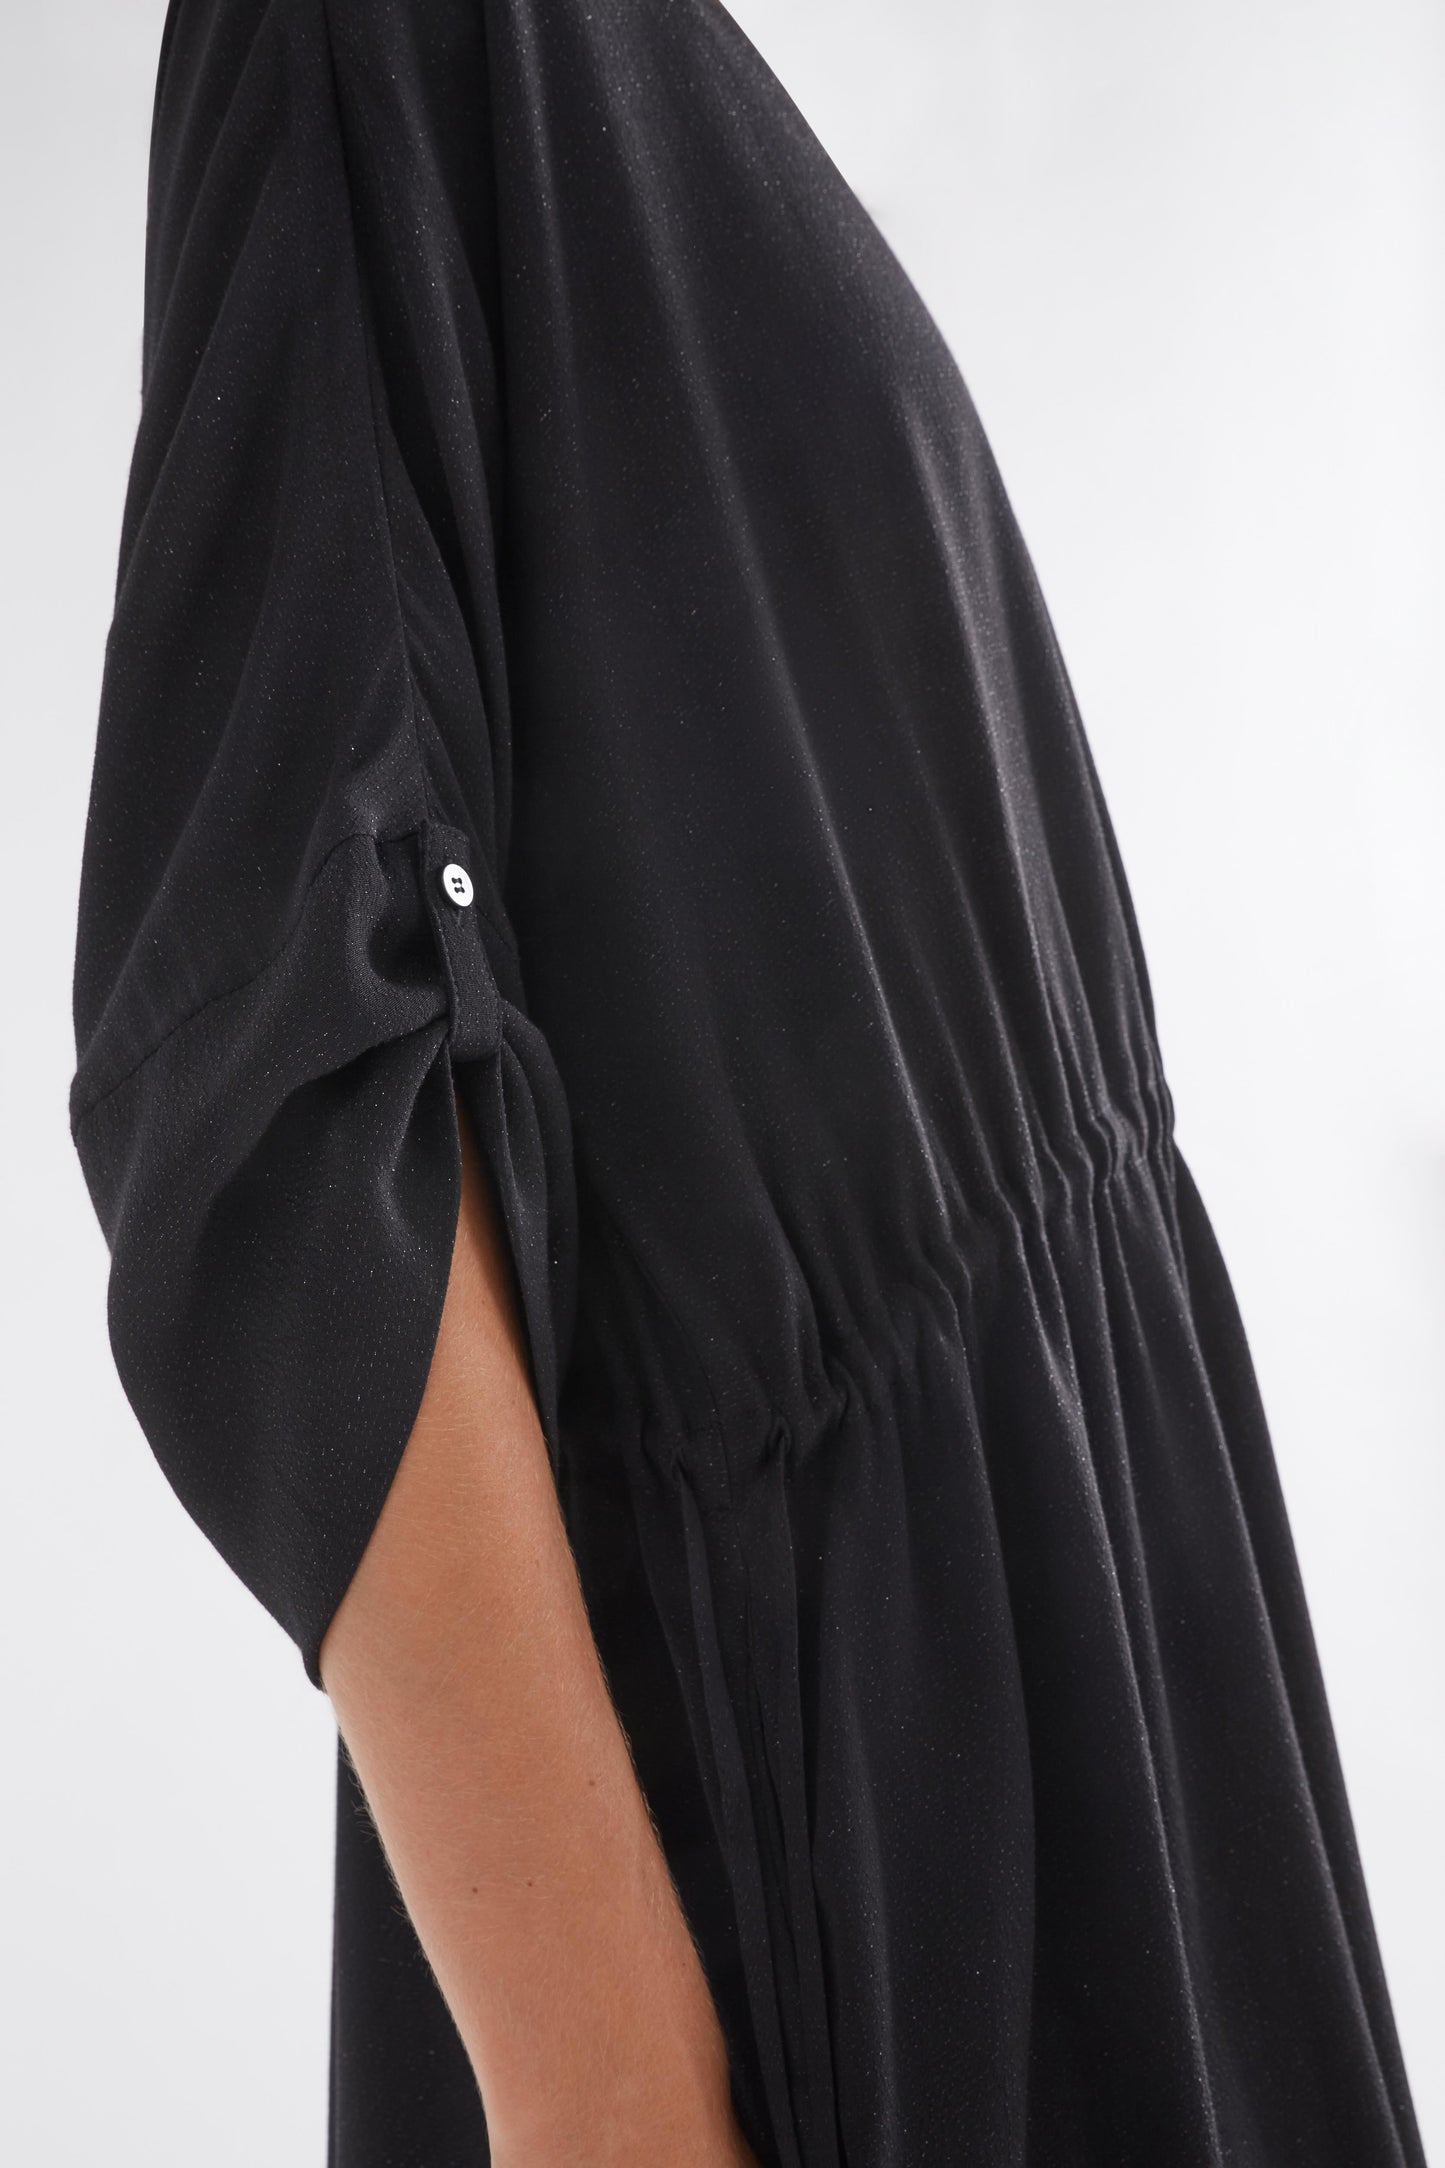 Blic Metallic Drawstring Dress with Slip Model Side detail | BLACK METALLIC